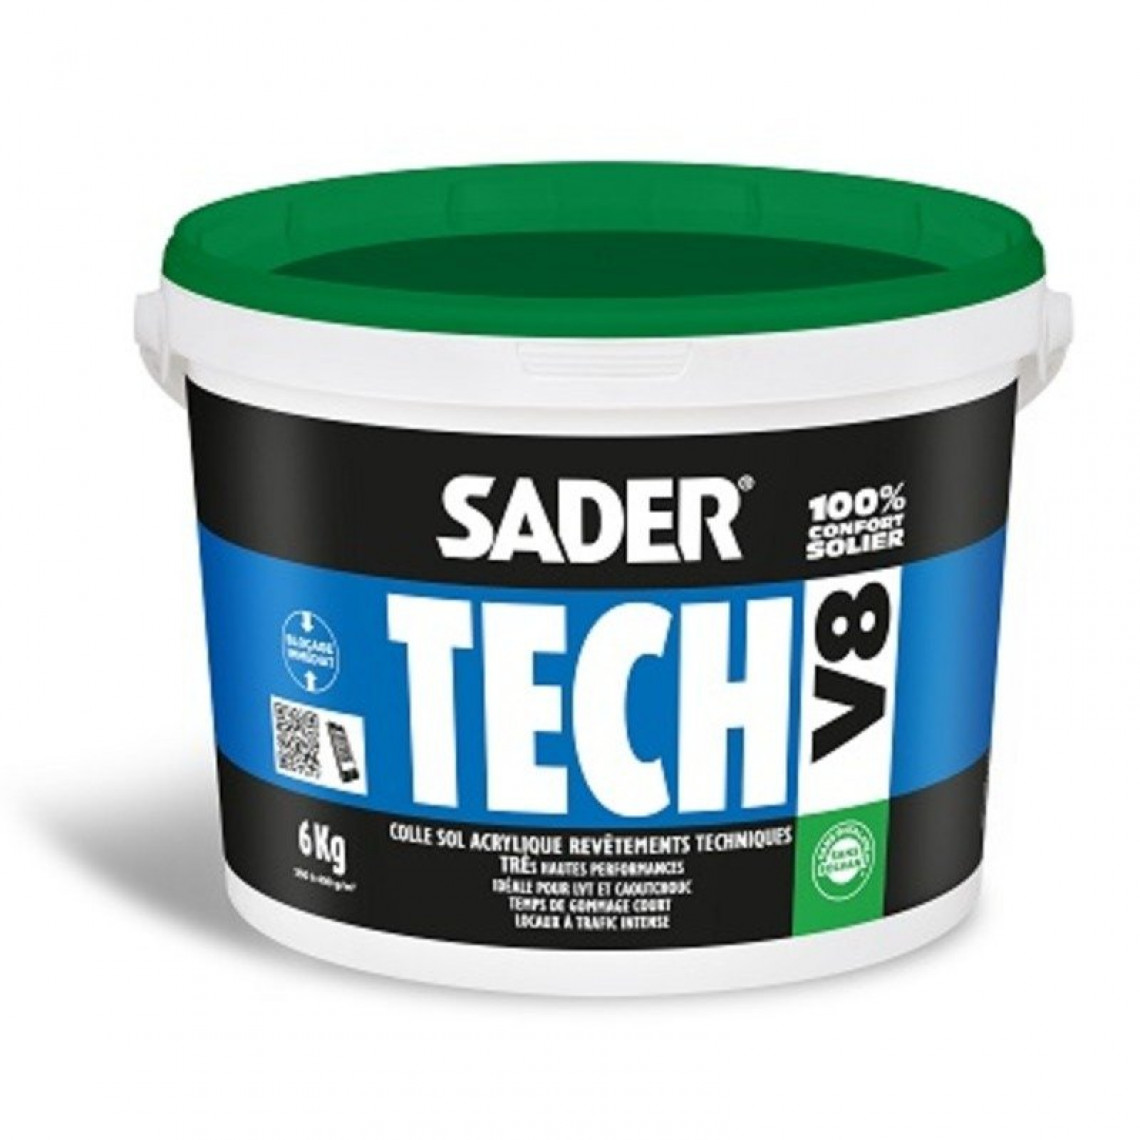 Sader - SADERTECH V8 - 6kg - Colle sol acrylique hautes performances - BOSTIK - Colle revêtement sol & mur